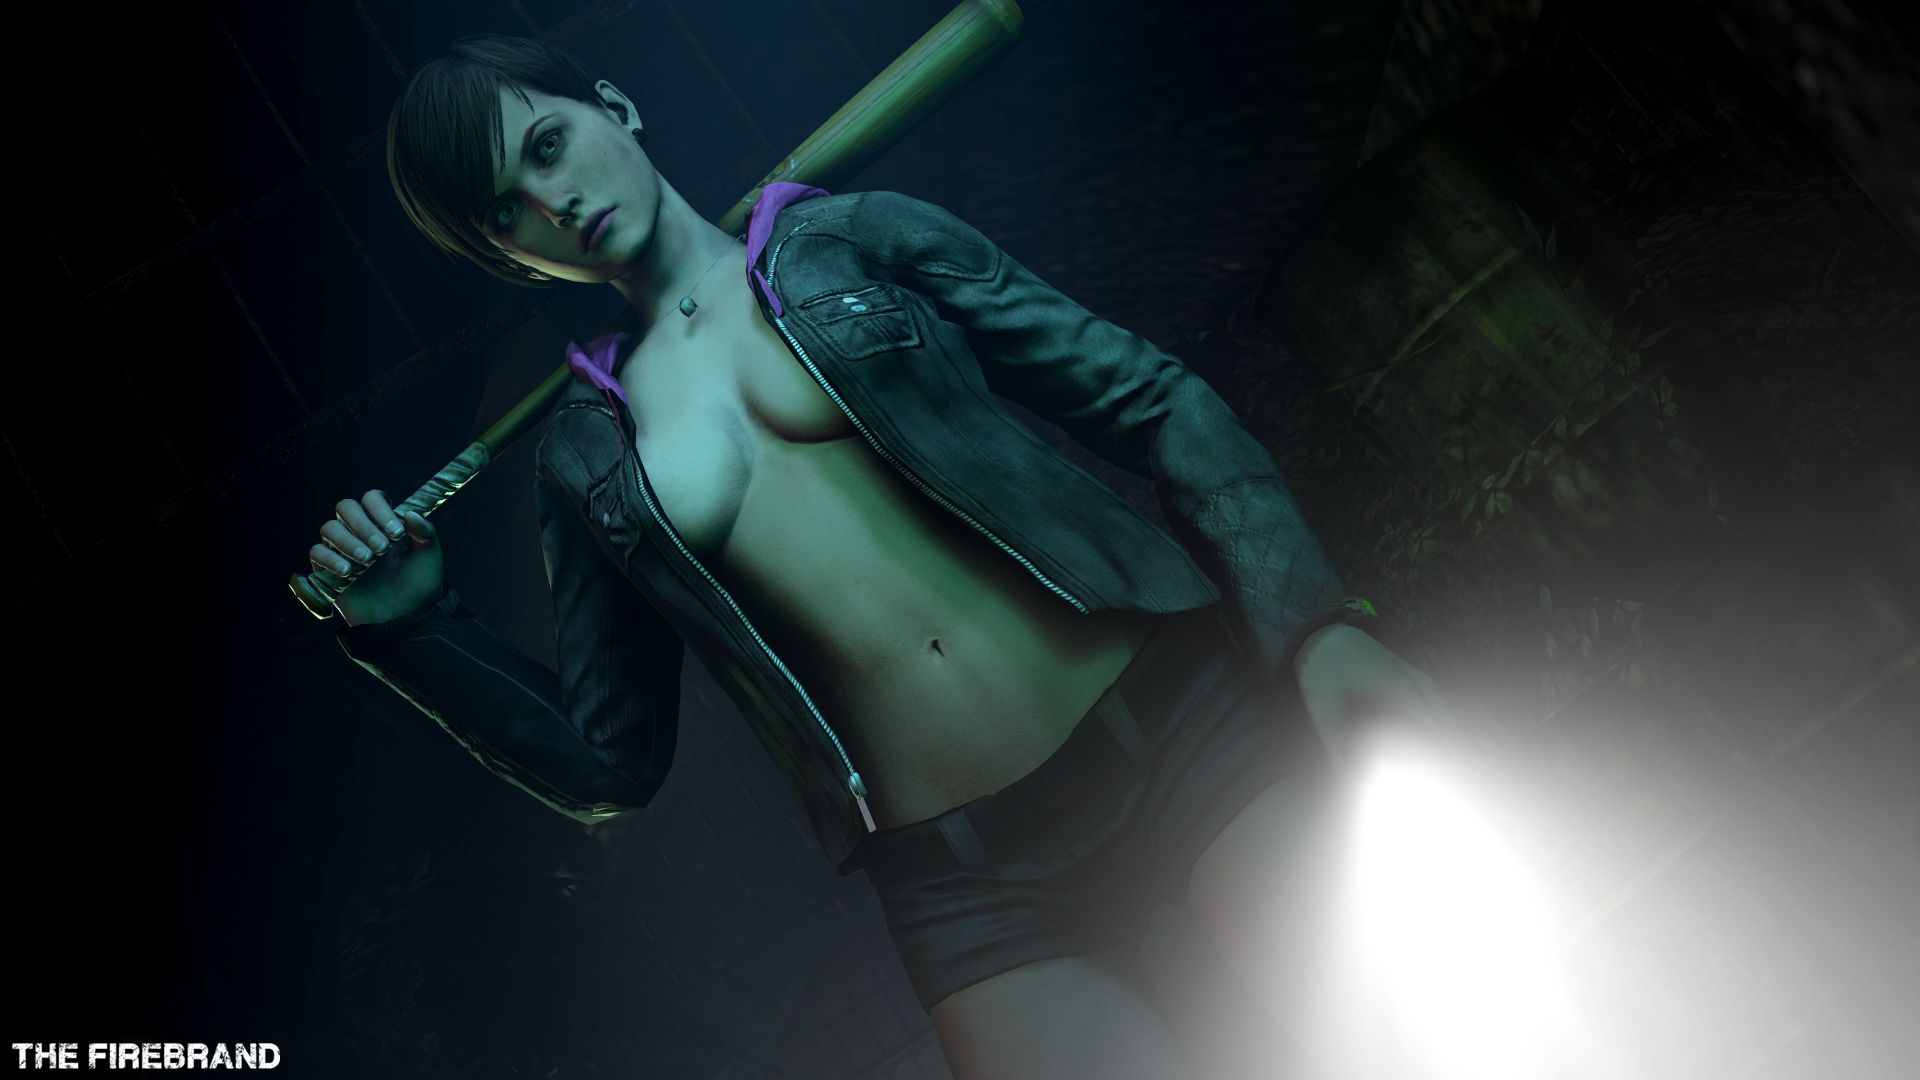 Resident Evil: revelations 2 - Moira Barton - (20 pictures) - erotic. 16